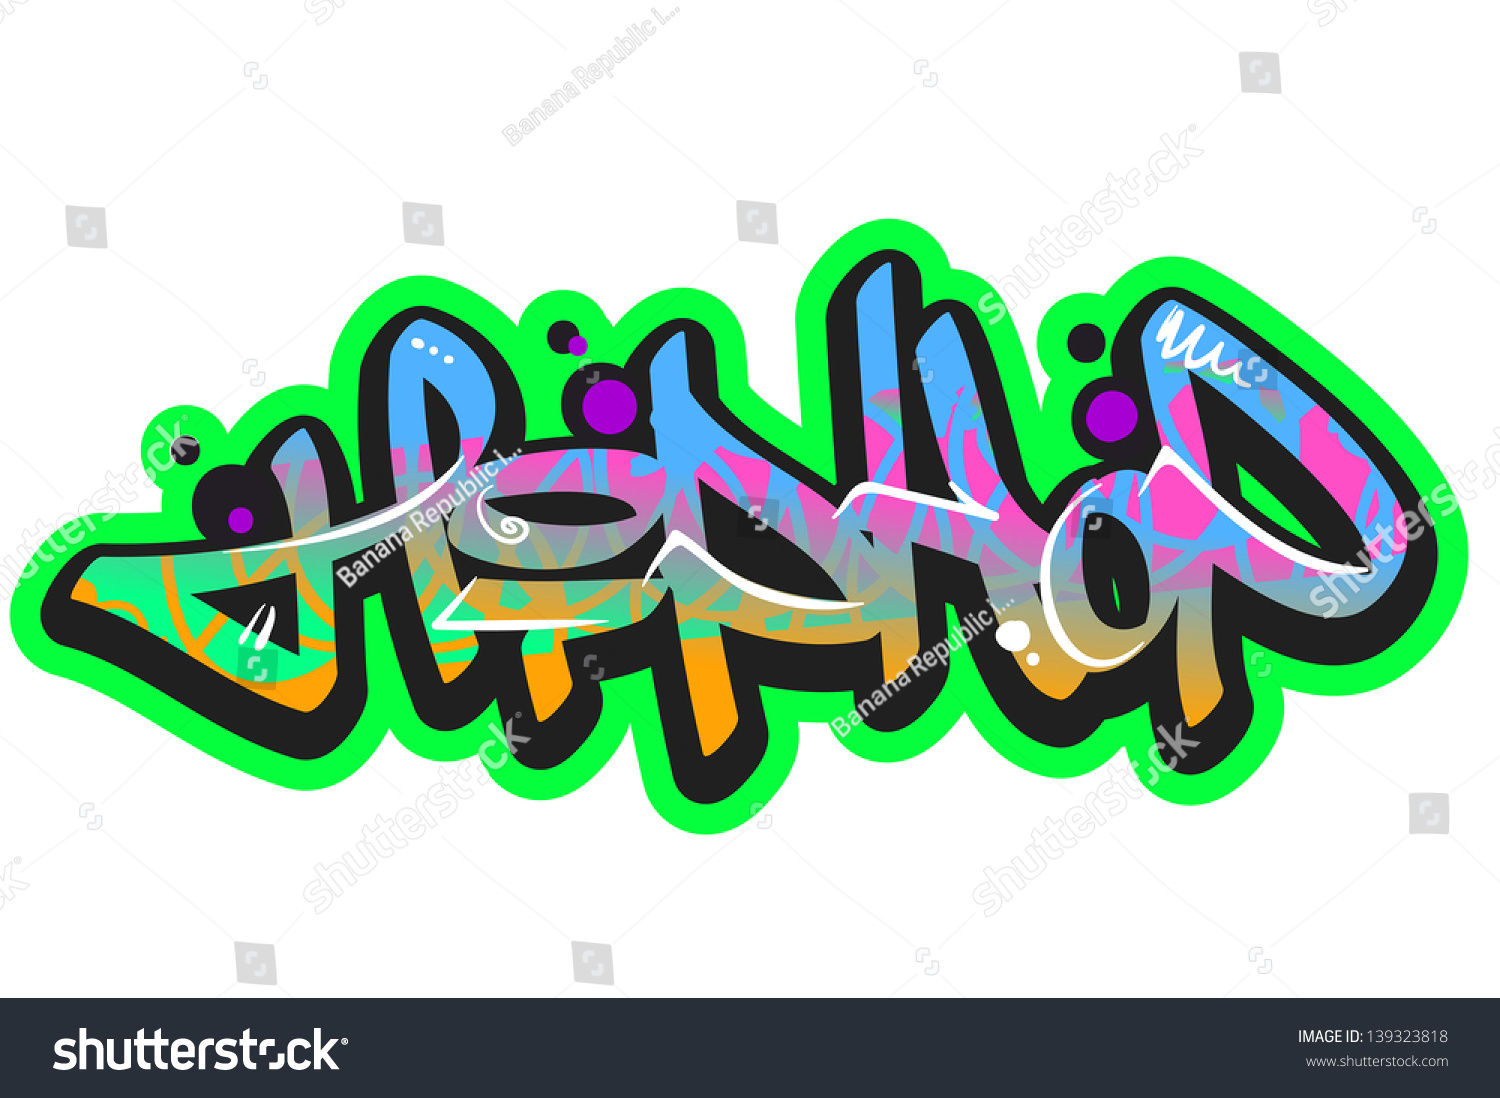 Graffiti Vector Art Urban Design Element - 139323818 : Shutterstock